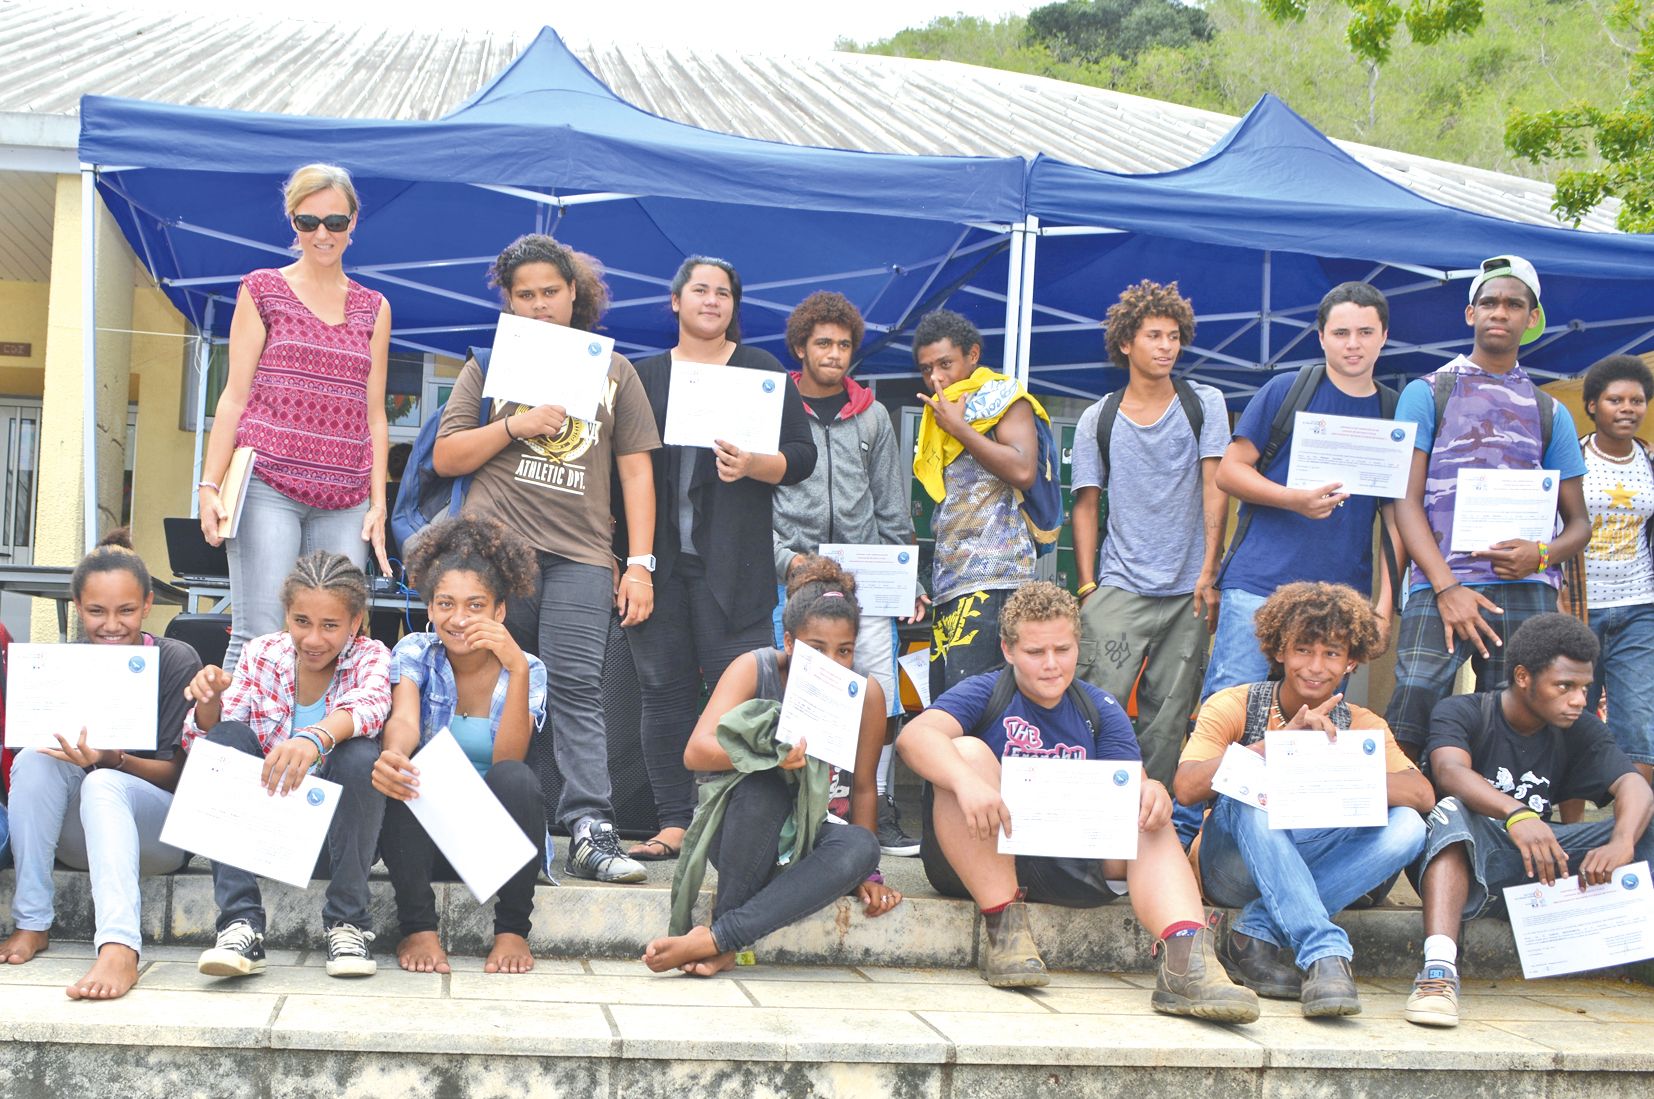 Les élèves de 3e découverte professionnelle et ceux de 4e, qui n’ont pas participé aux voyages en Nouvelle-Zélande et au Vanuatu, ont été formés aux premiers secours. Leur diplôme leur a été remis lors de cette matinée.